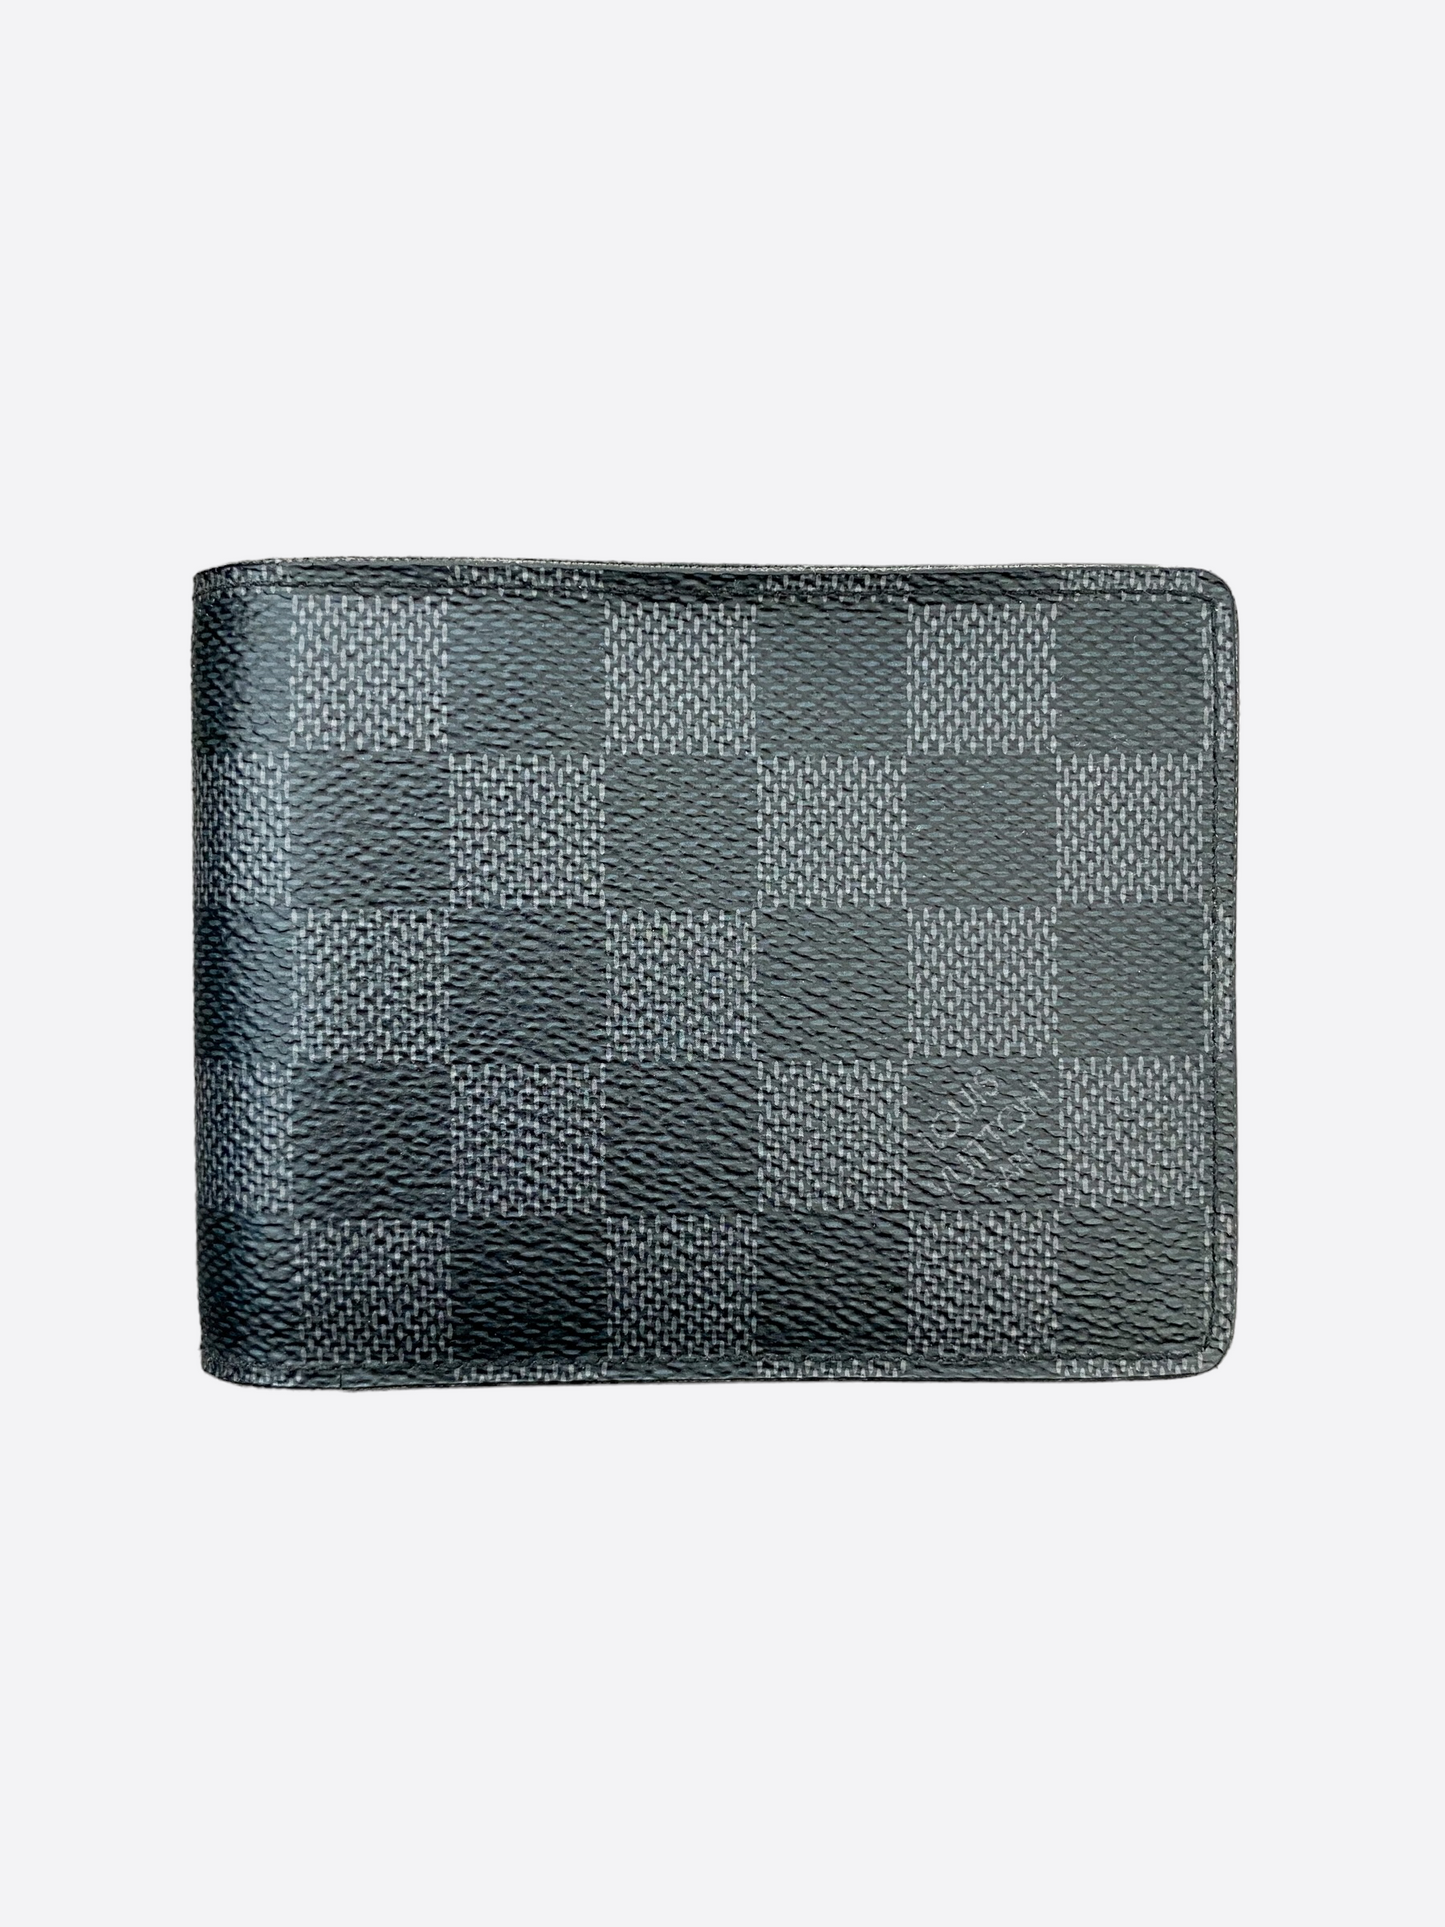 Louis Vuitton Graphite Canvas Damier Multiple Wallet